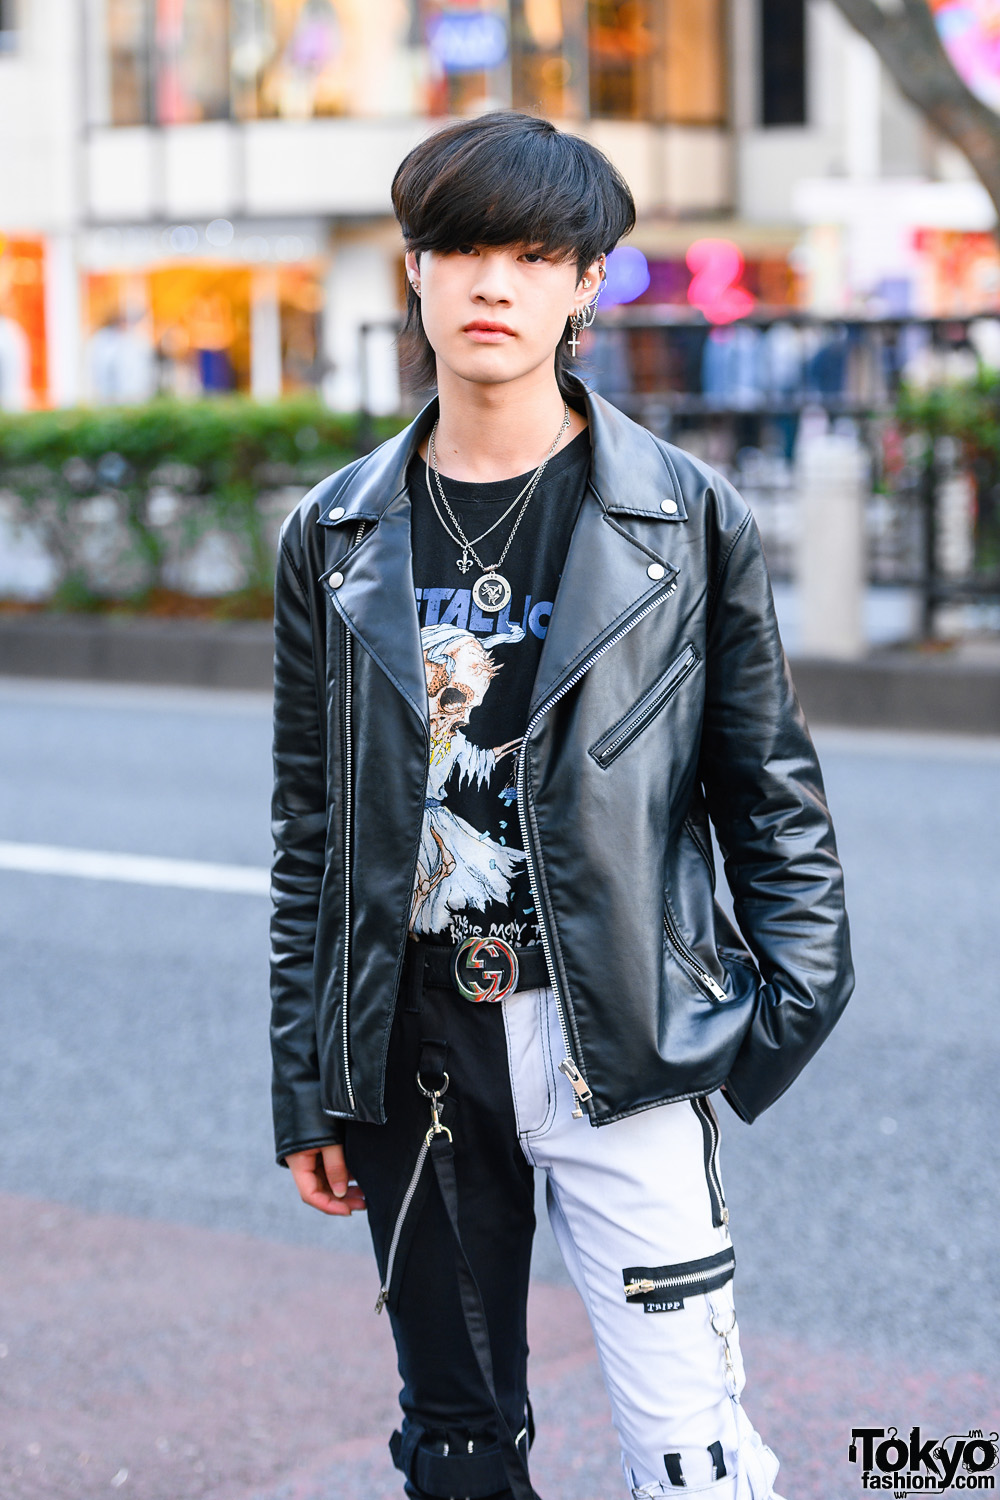 Tokyo Menswear Style w/ Shaggy Bob, Faith Tokyo Accessories, GU ...